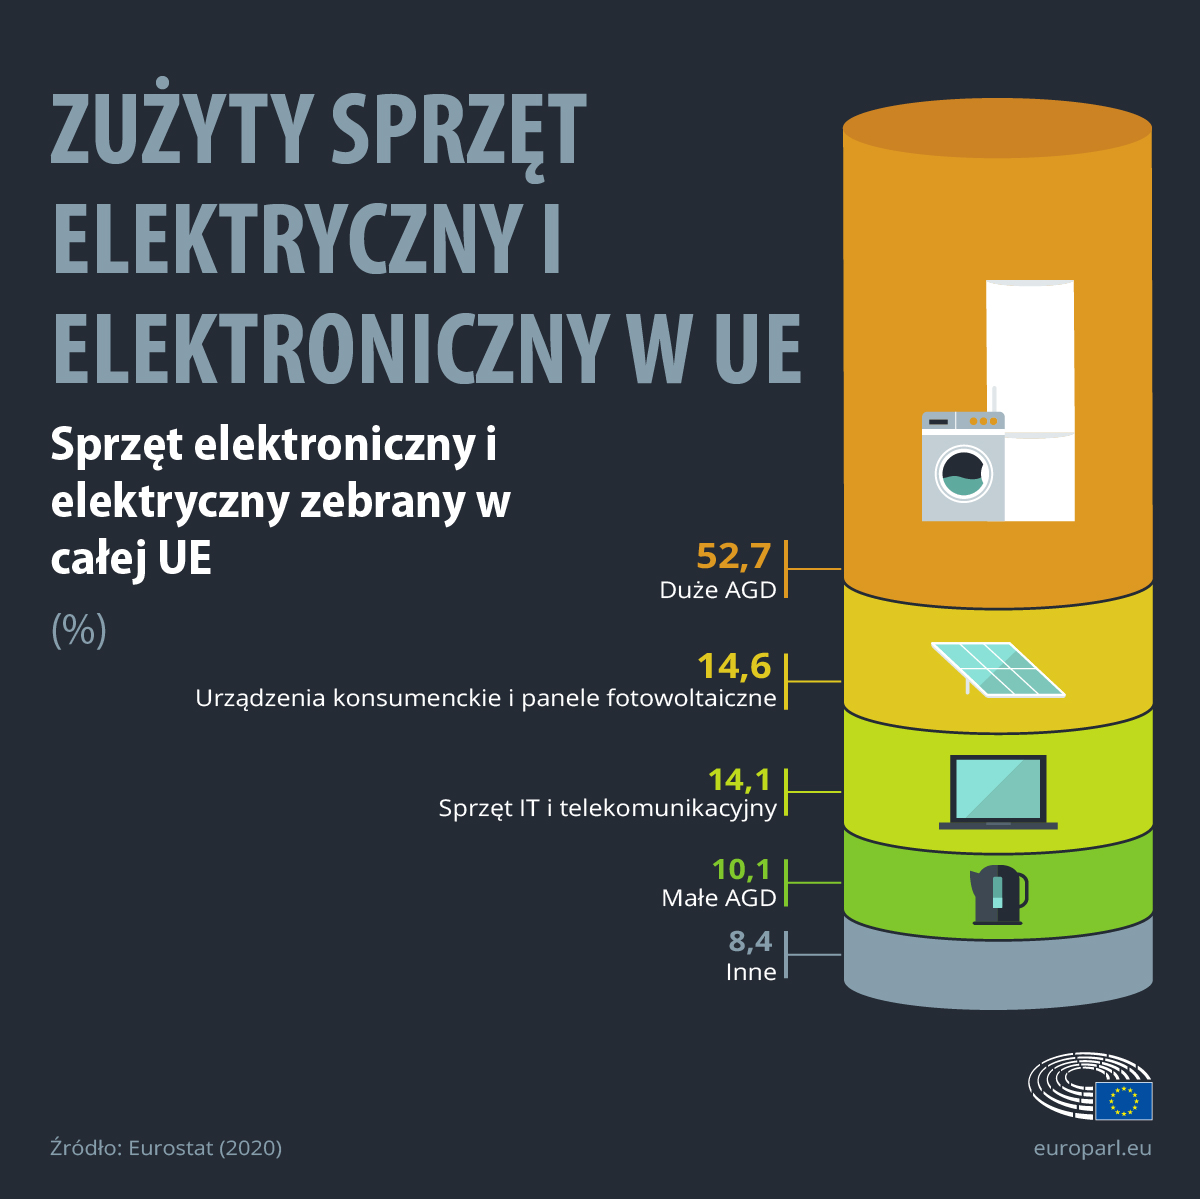 Odsetek poszczególnych rodzajów urządzeń w e-odpadach w UE 